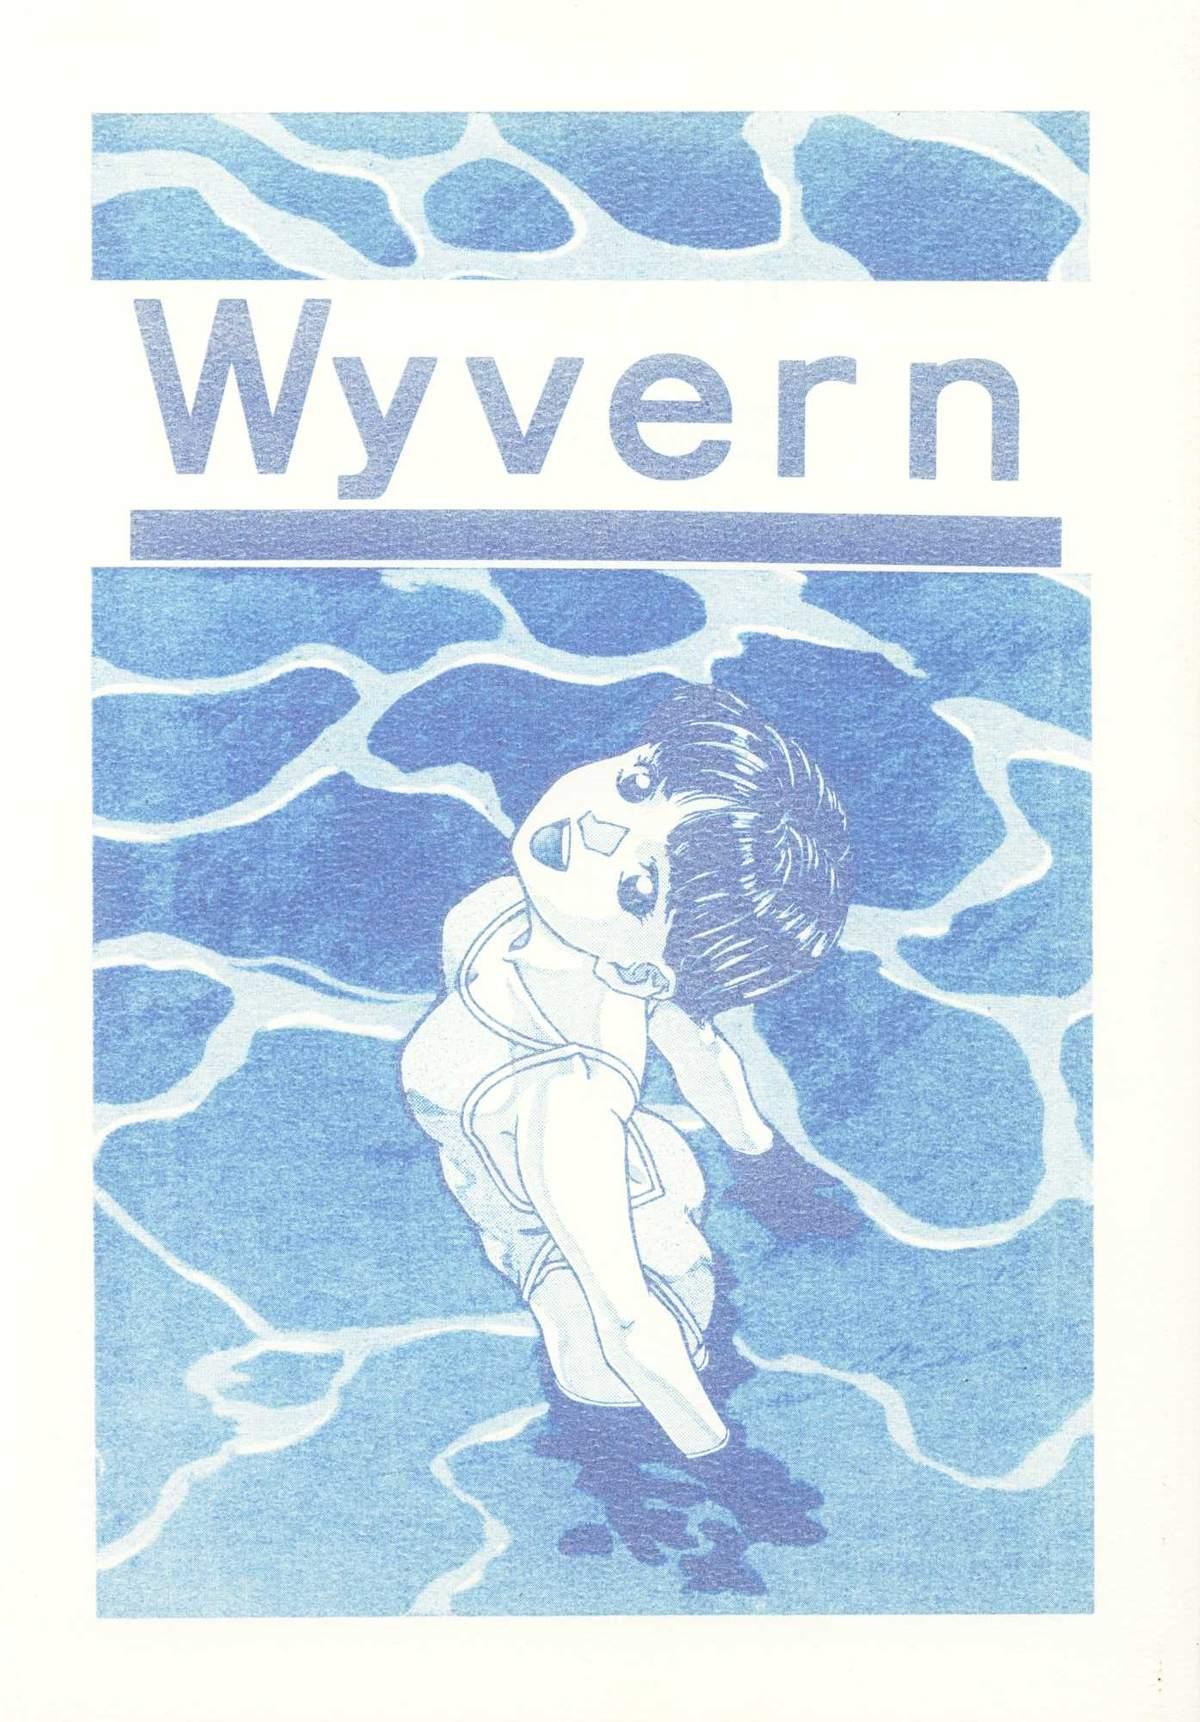 Wyvern 0